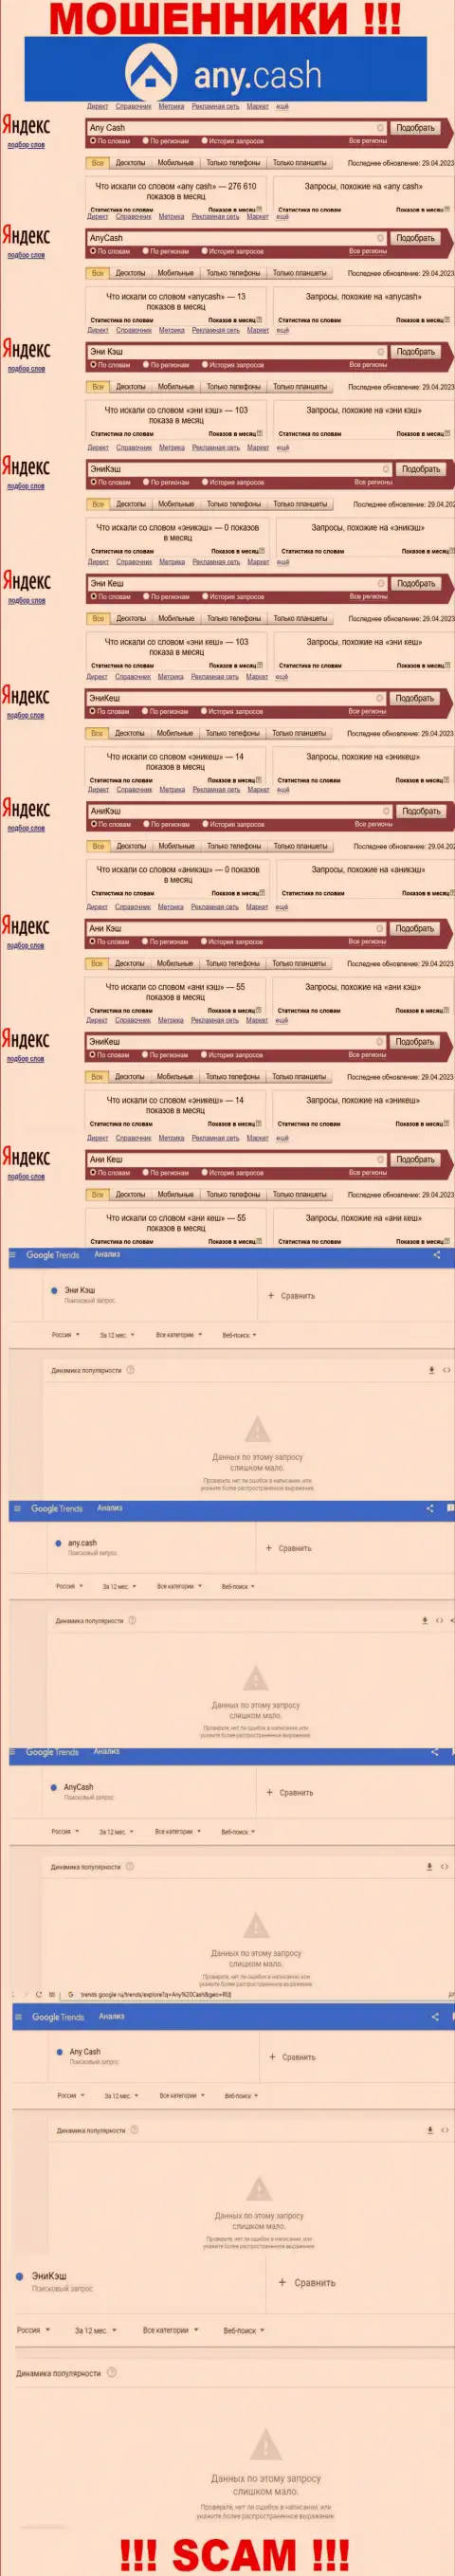 Скриншот результата онлайн-запросов по противозаконно действующей организации ЭниКеш